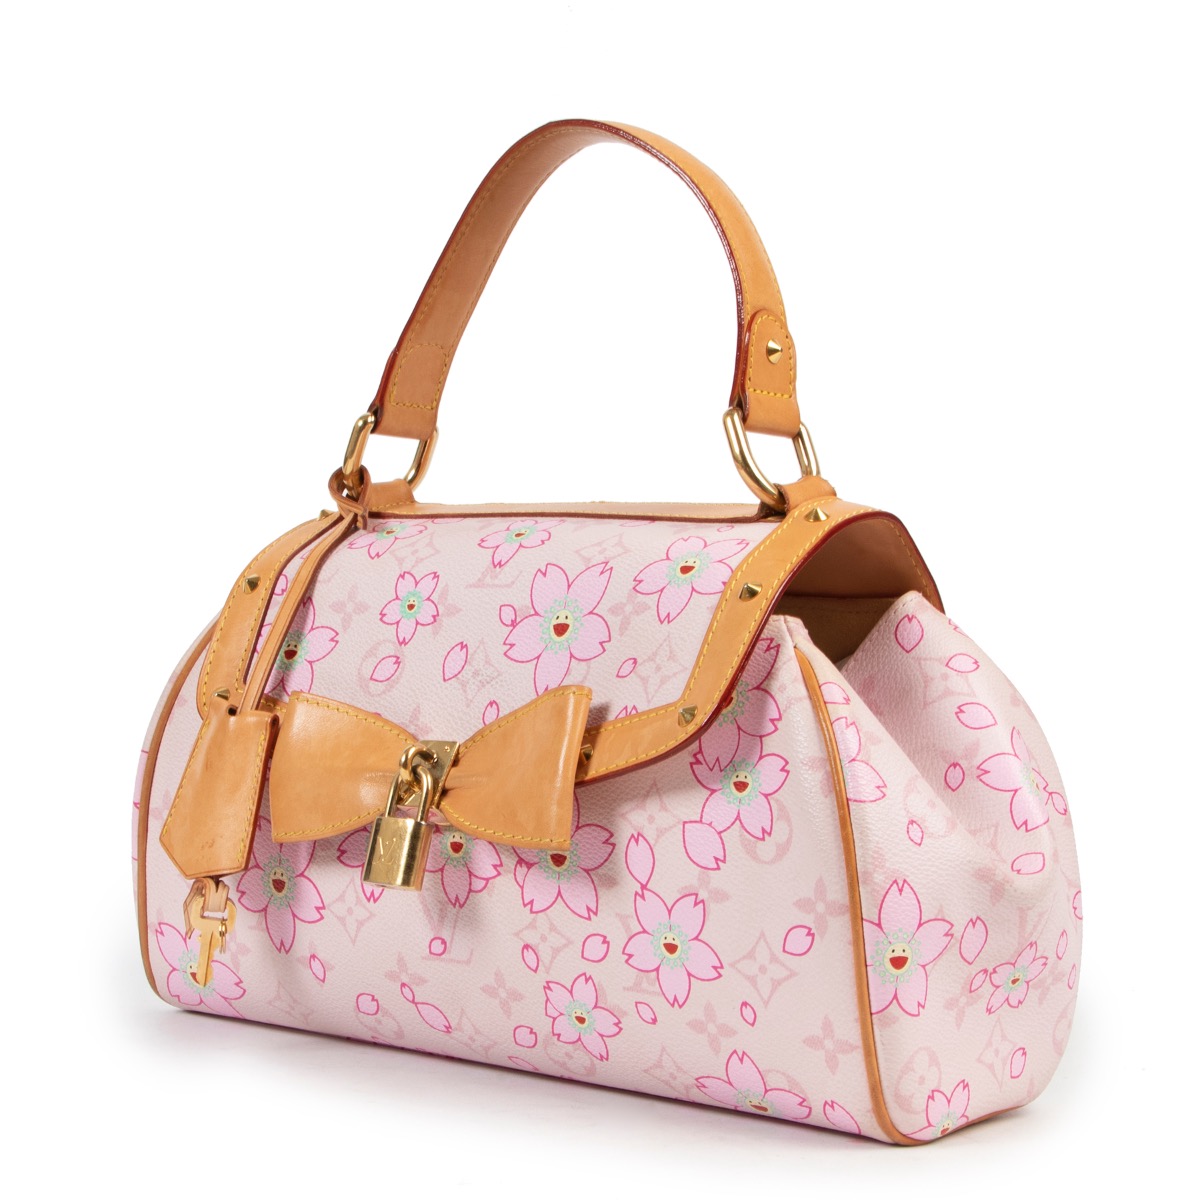 My replica Louis Vuitton Sac Retro Cherry Blossom bag 🌸 